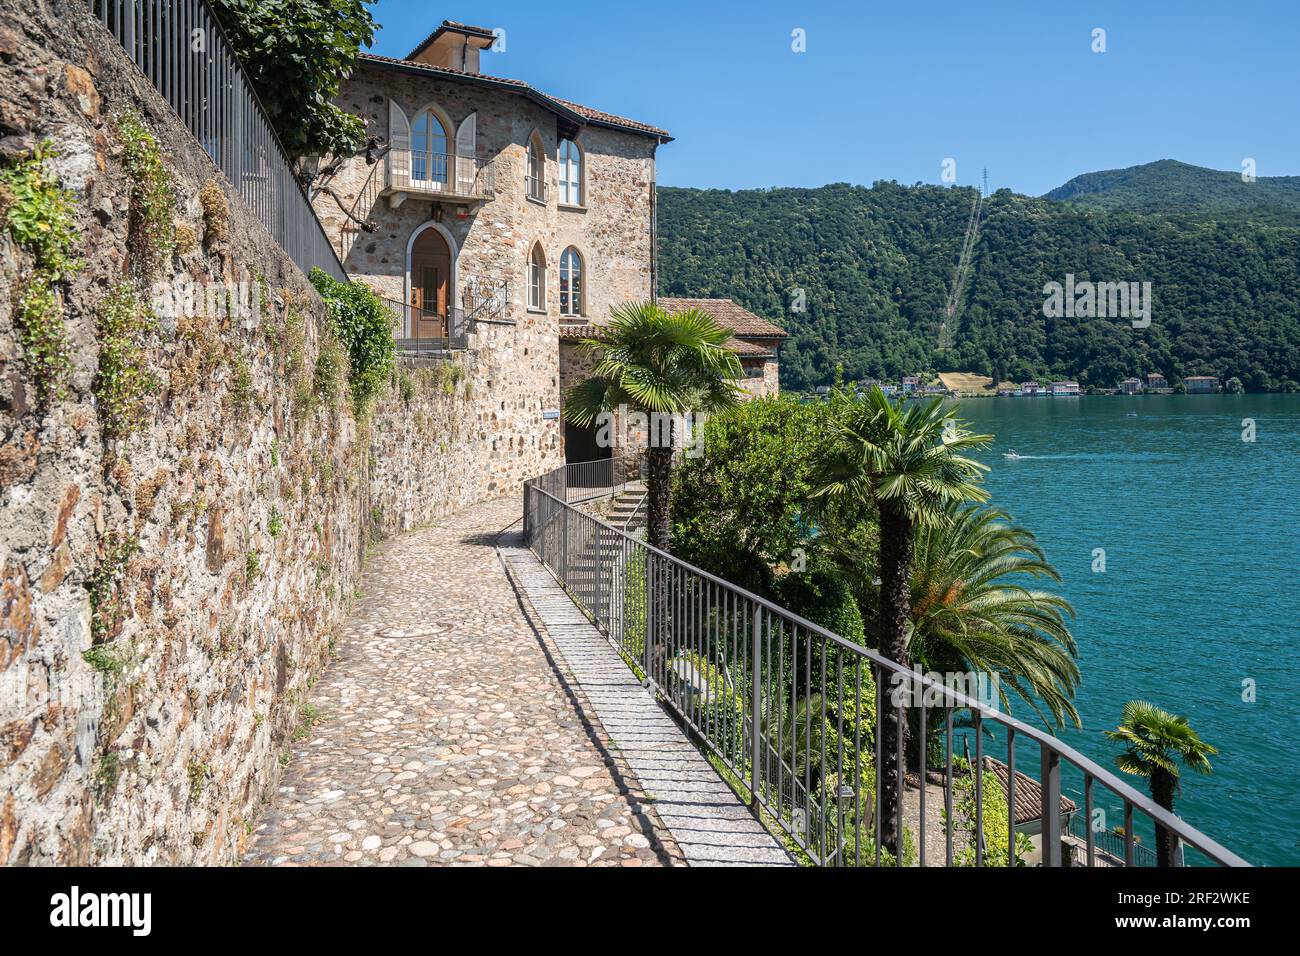 Morcote si affaccia sul Lago di Lugano, considerato uno dei più bei paesini della Svizzera Foto Stock